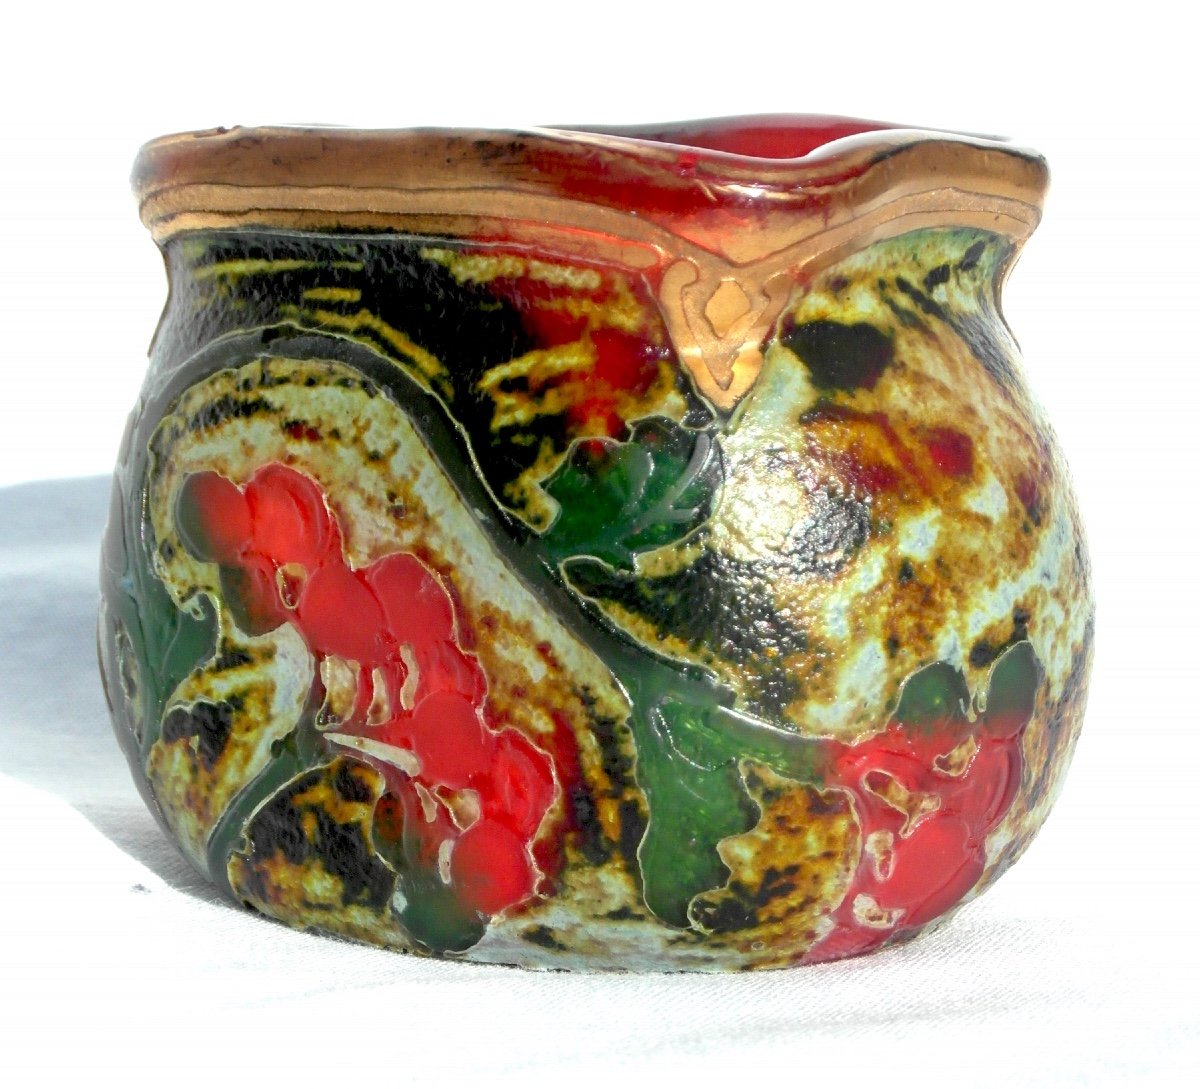  Rare Legras Miniature Vase, Indiana Series, Unique Berry Decor, Era Daum Galle 1900